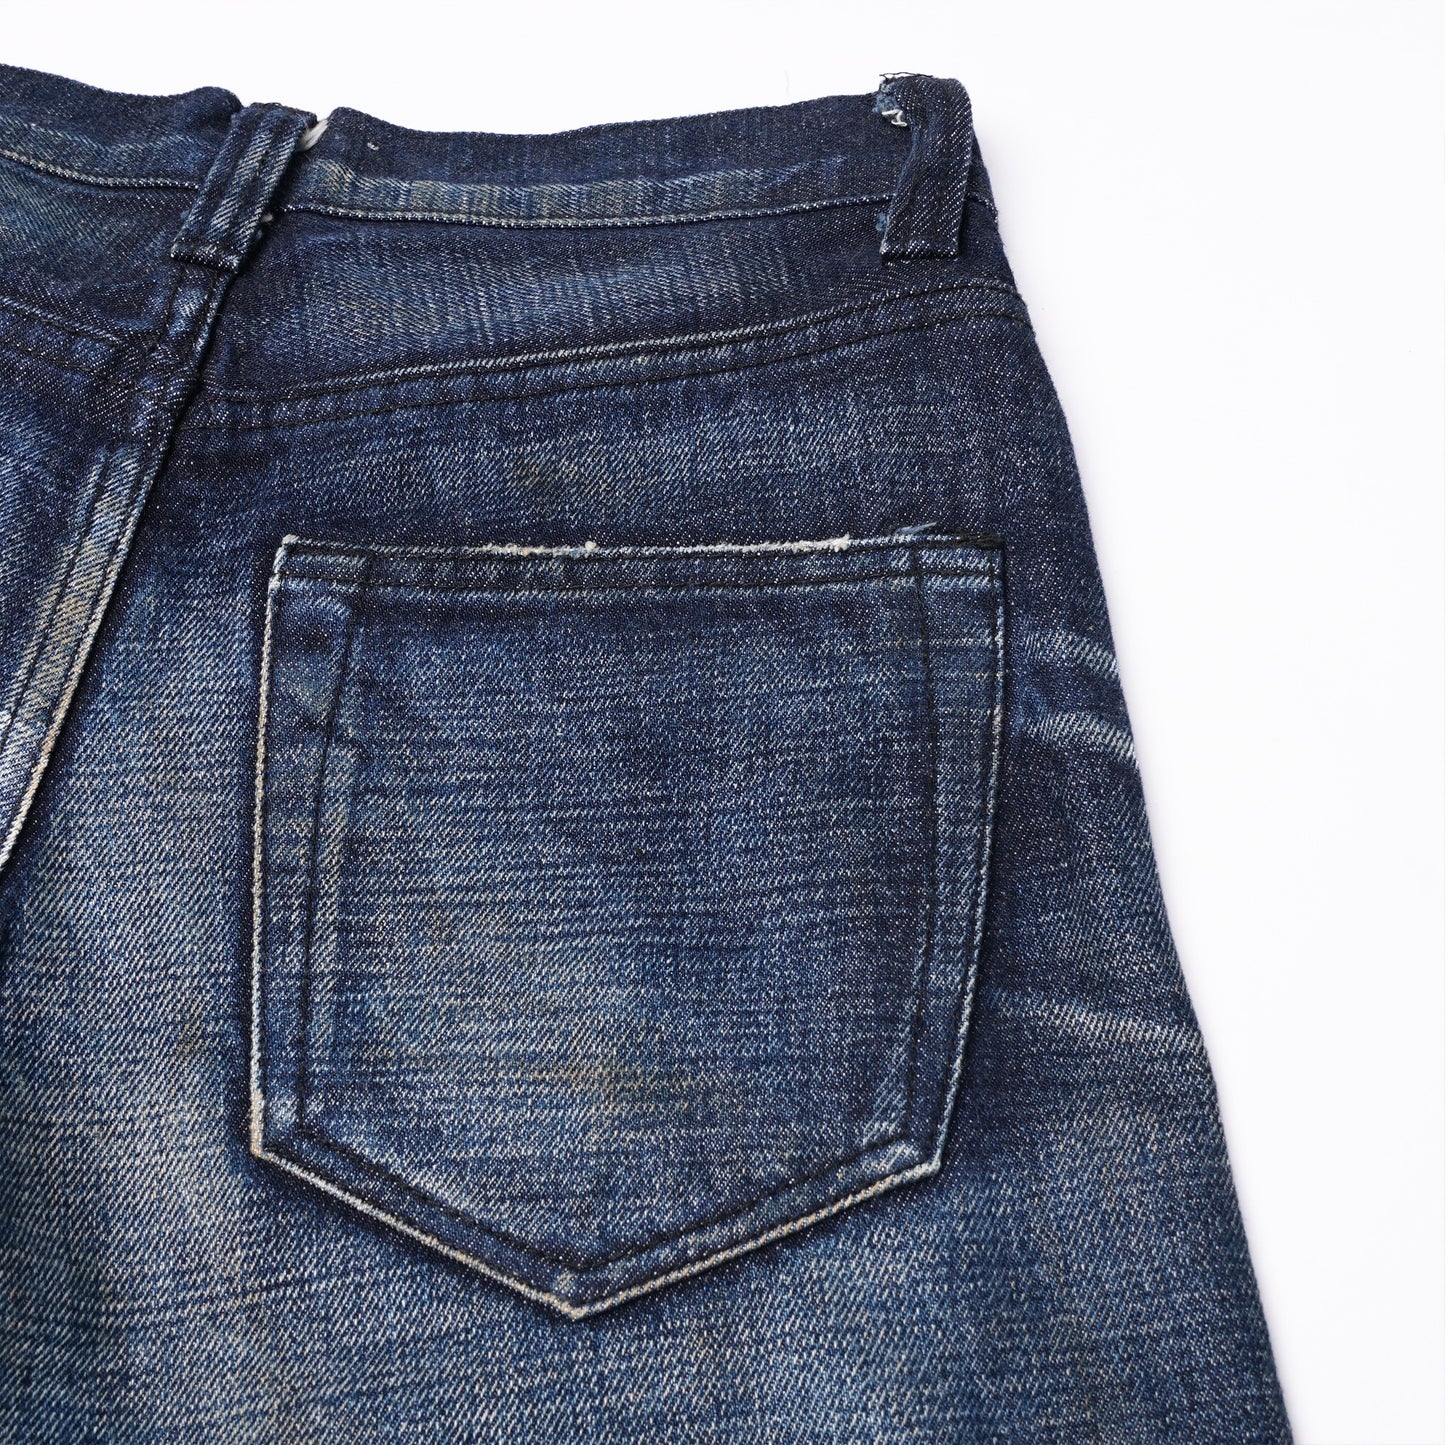 【訂製】No.4 Dark Blue Washed Slim Cut Jeans